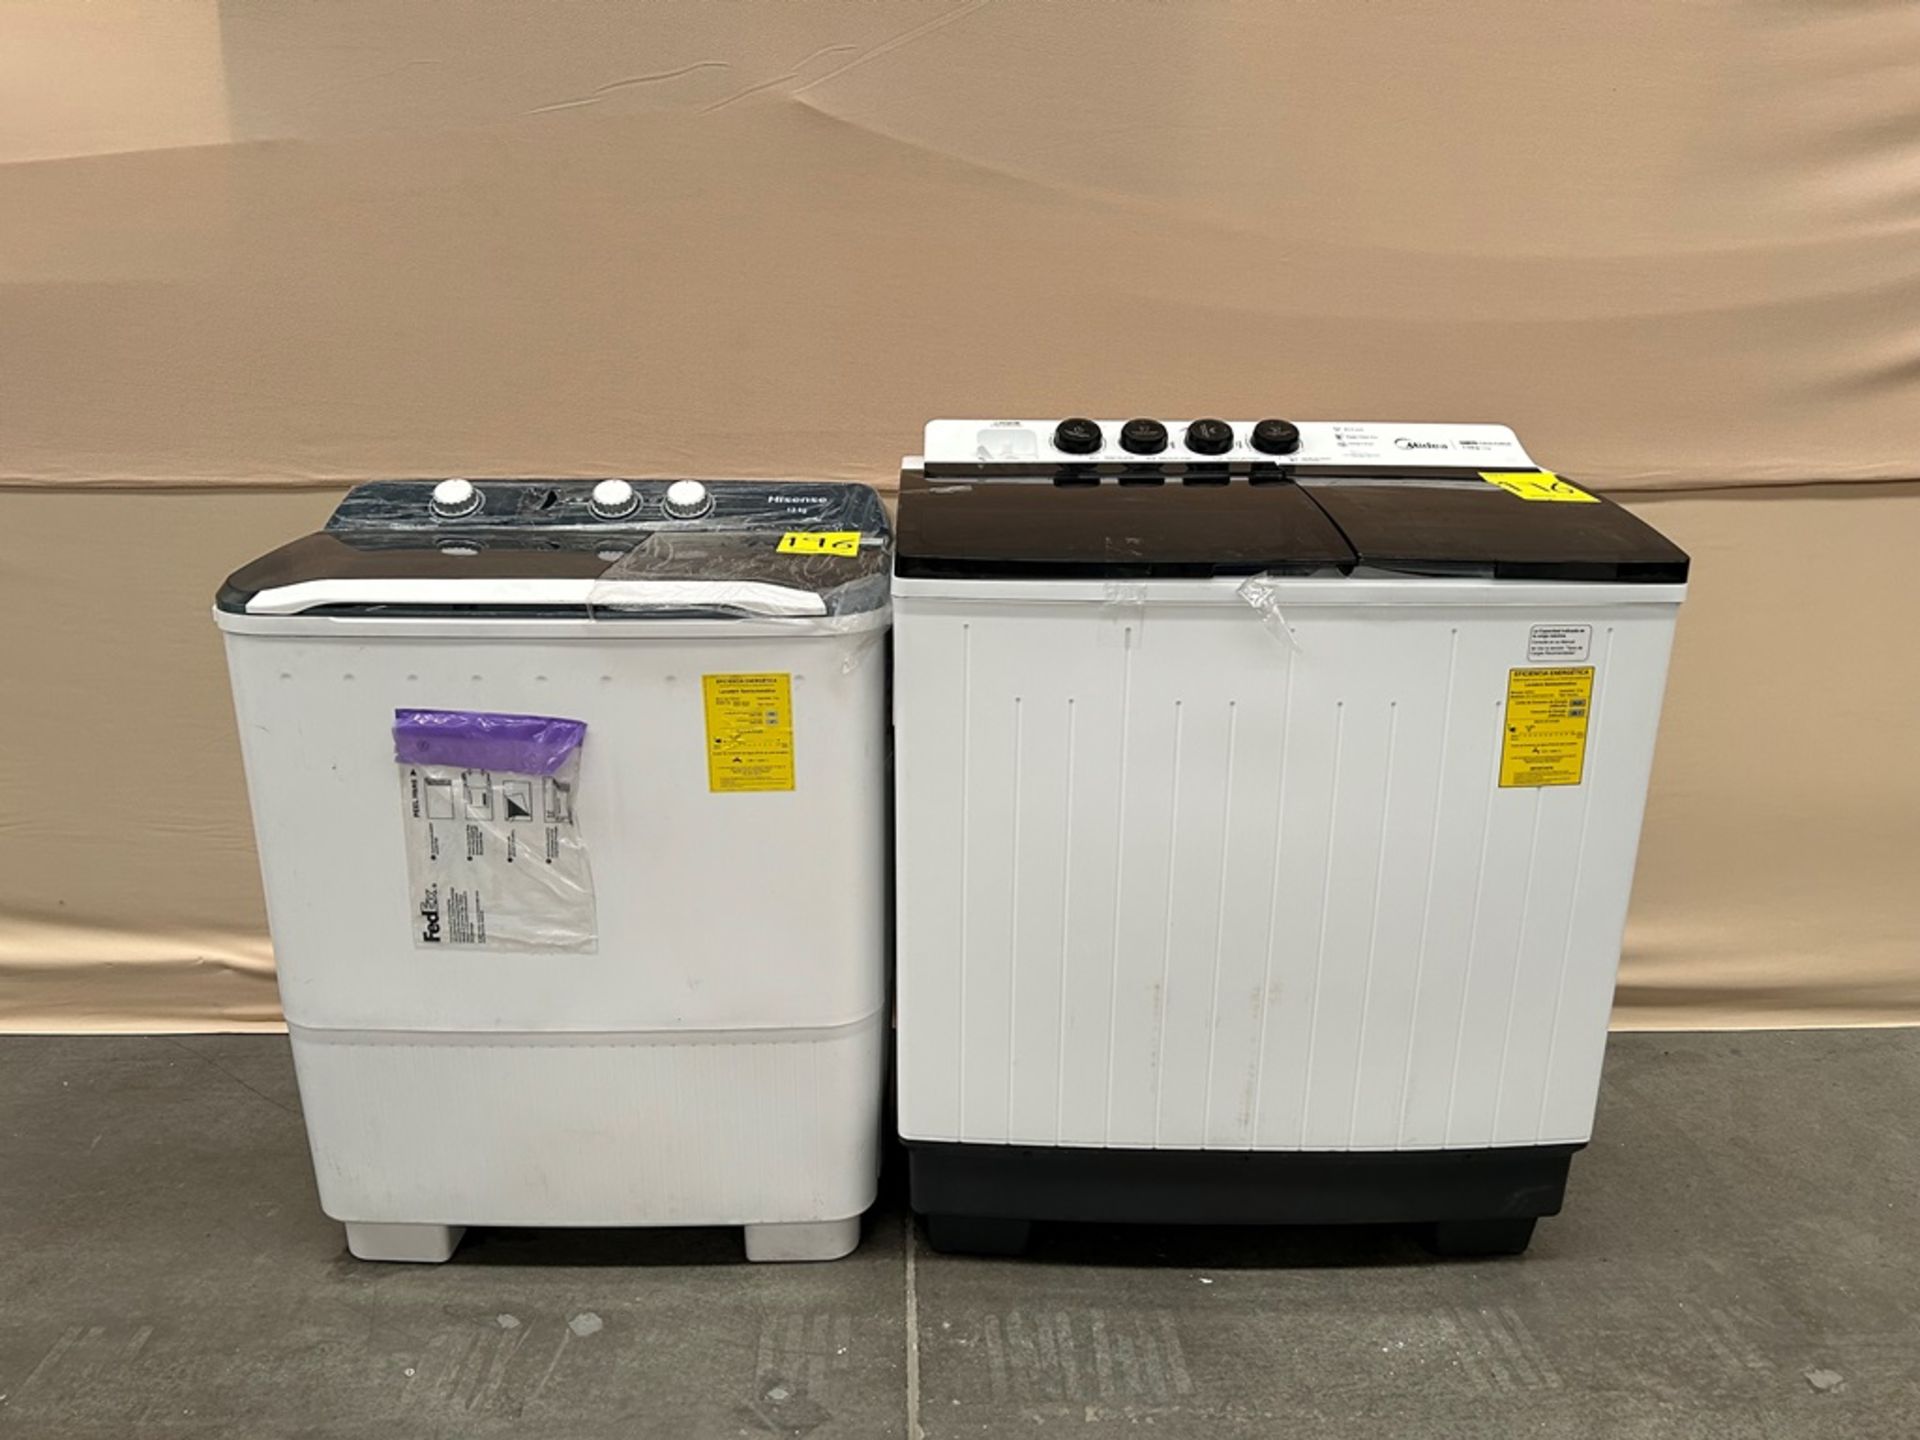 Lote de 2 lavadoras contiene: 1 Lavadora de 19 KG Marca MIDEA, Modelo MT100W190, Serie 01241, Color